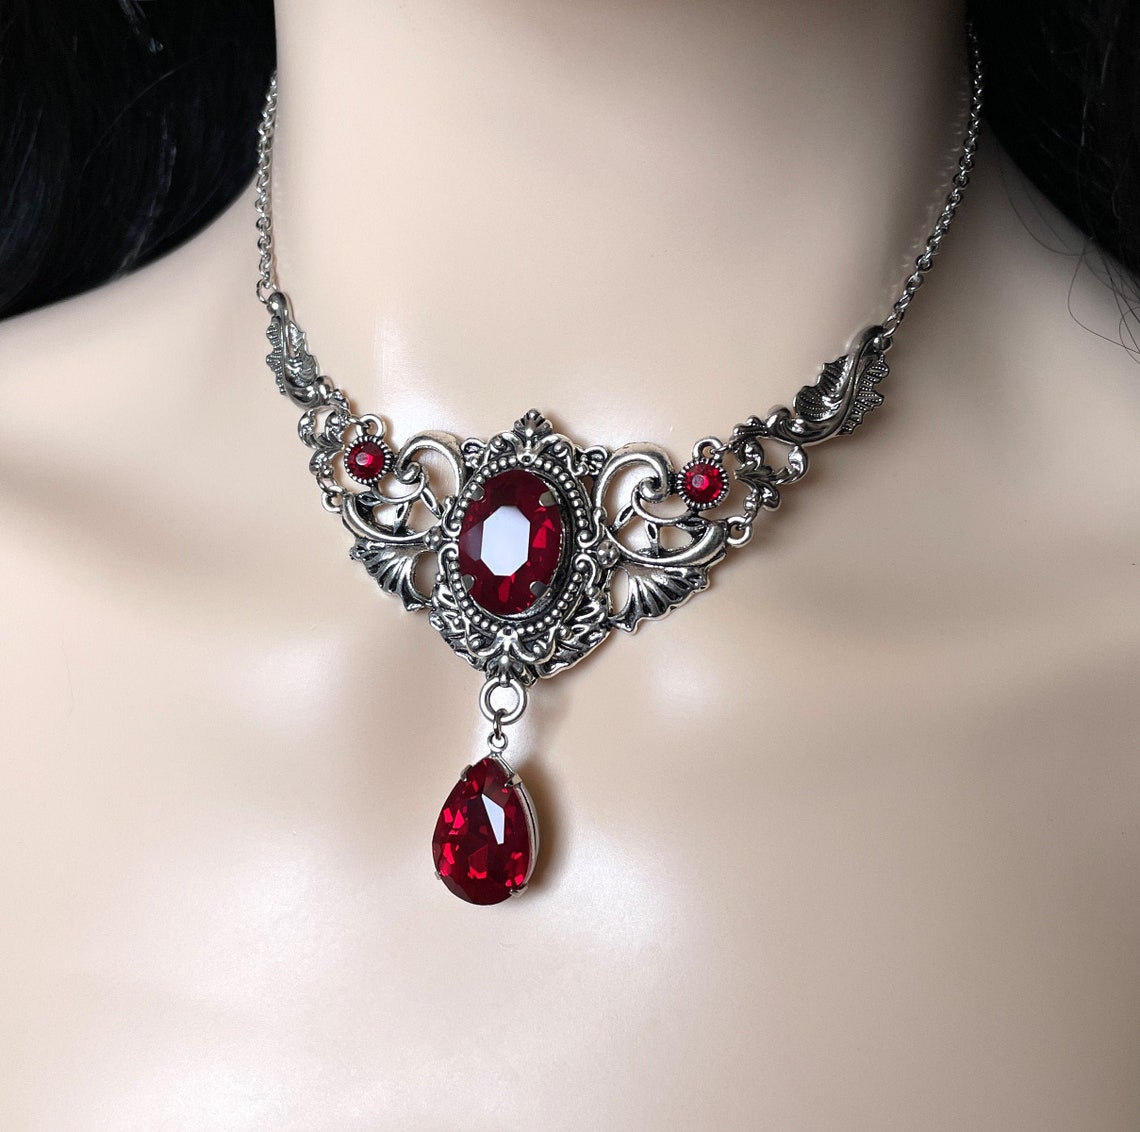 Dark Ruby Red/Garnet Gothic Antique Silver Filigree Victorian | Etsy